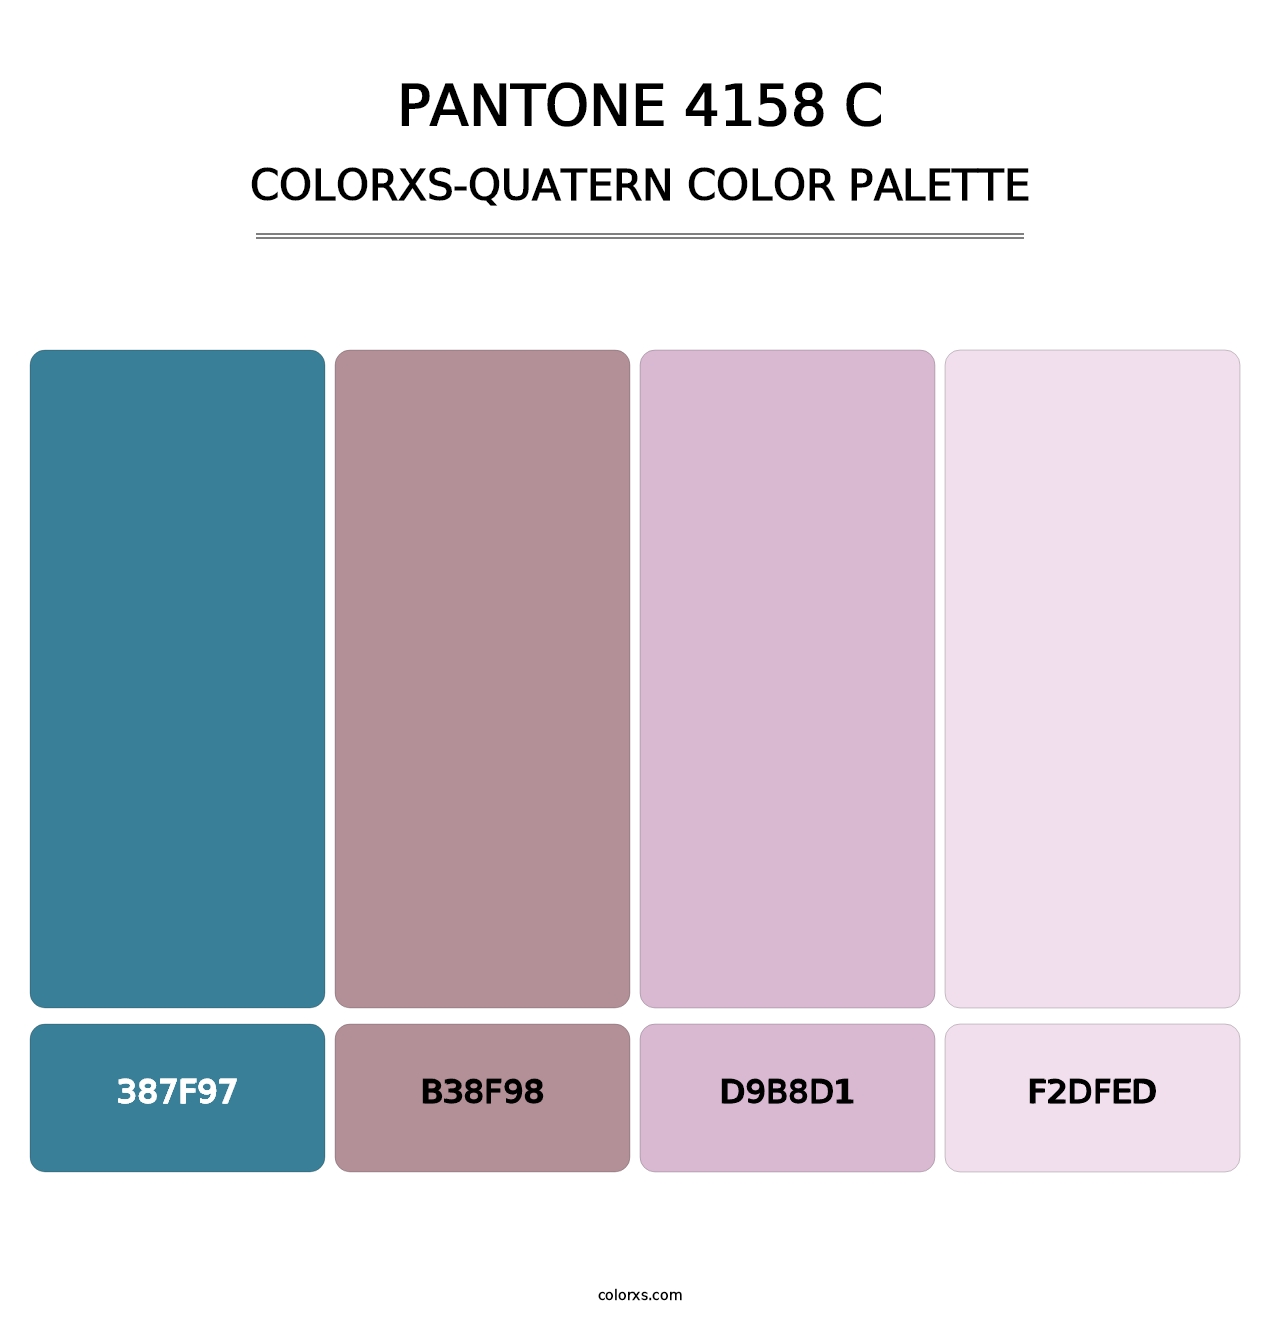 PANTONE 4158 C - Colorxs Quatern Palette